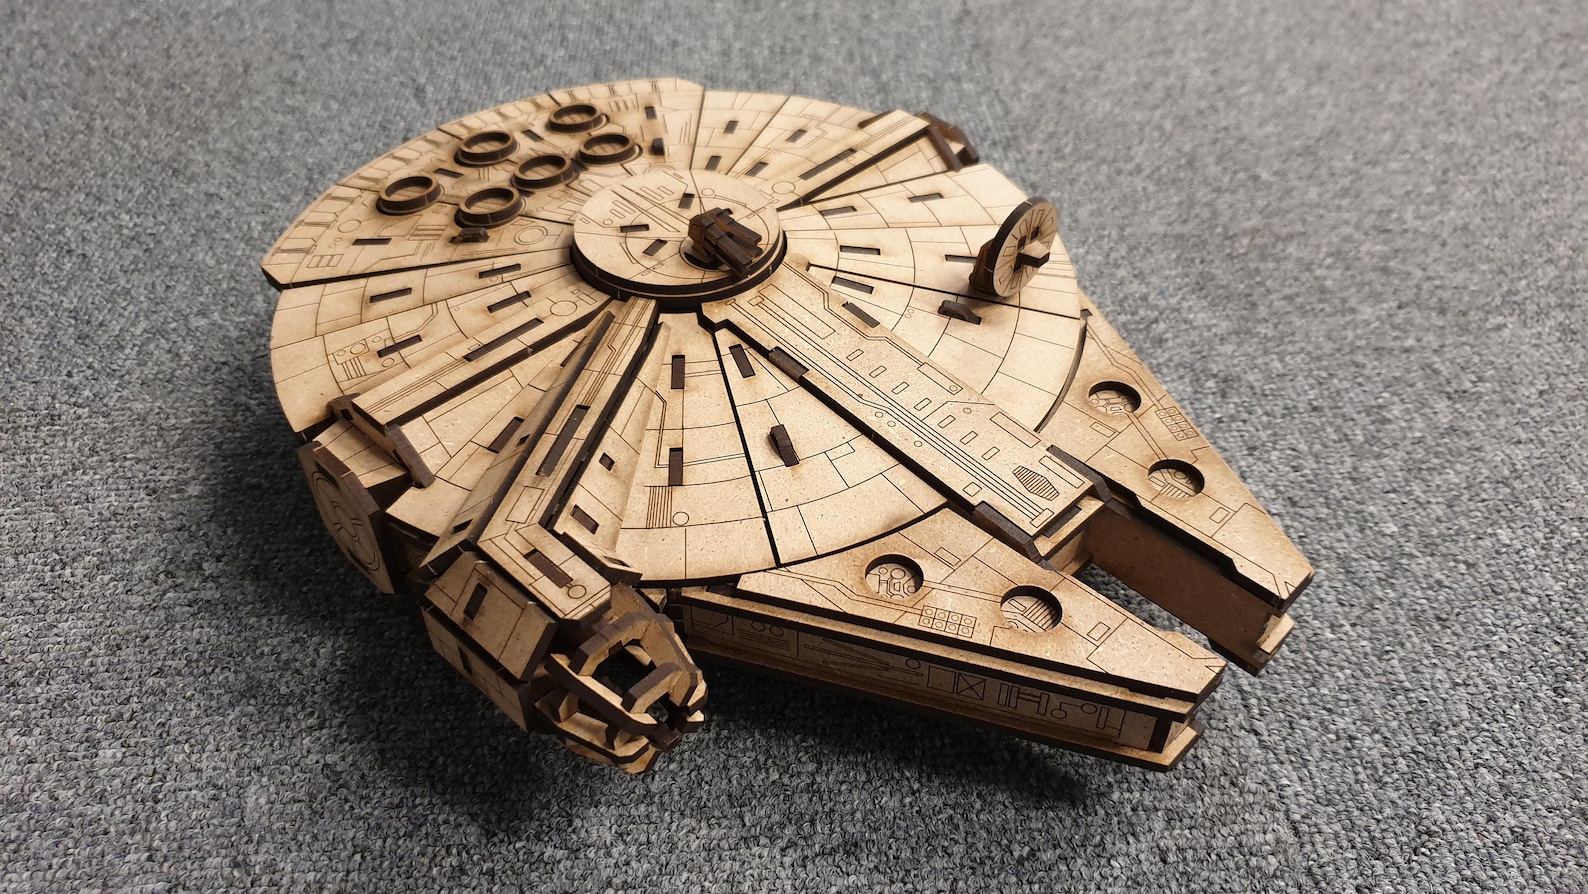 SW Laser Cut Starship Wooden Model 3D Kit 6-Pack Set 5